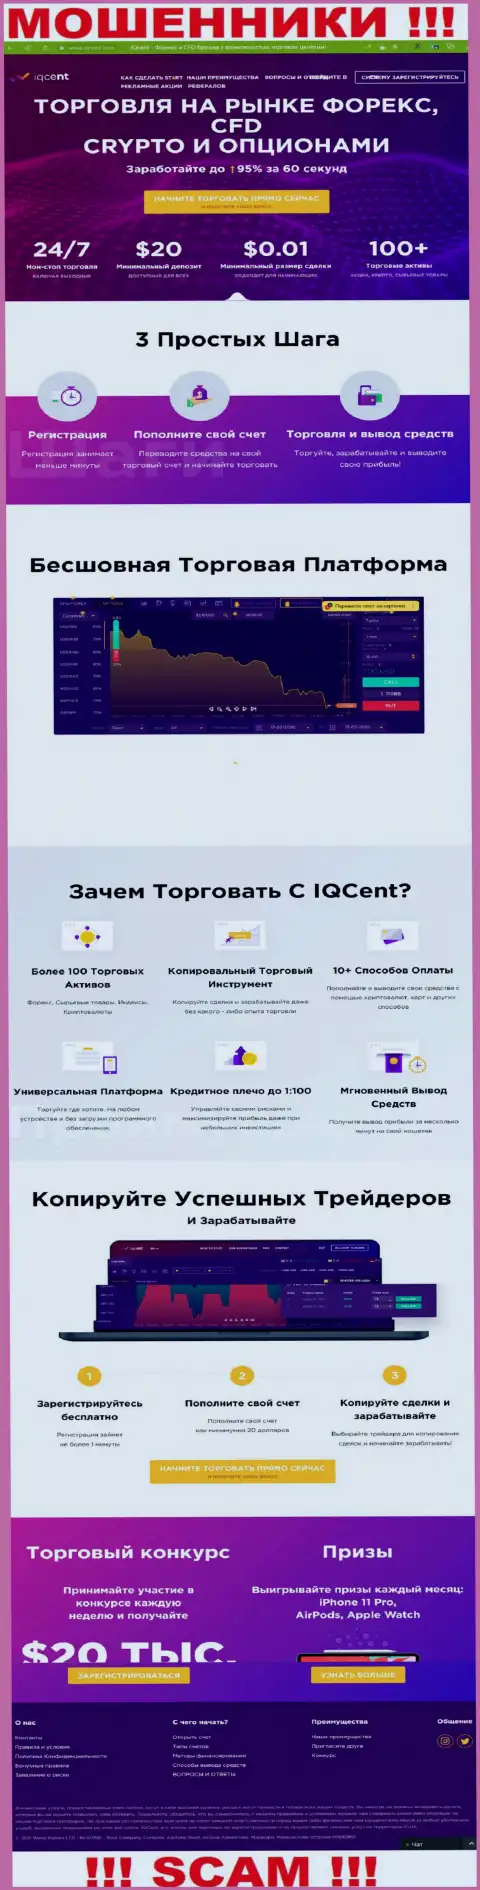 Официальный сервис мошенников АйКуЦент Ком, забитый информацией для доверчивых людей